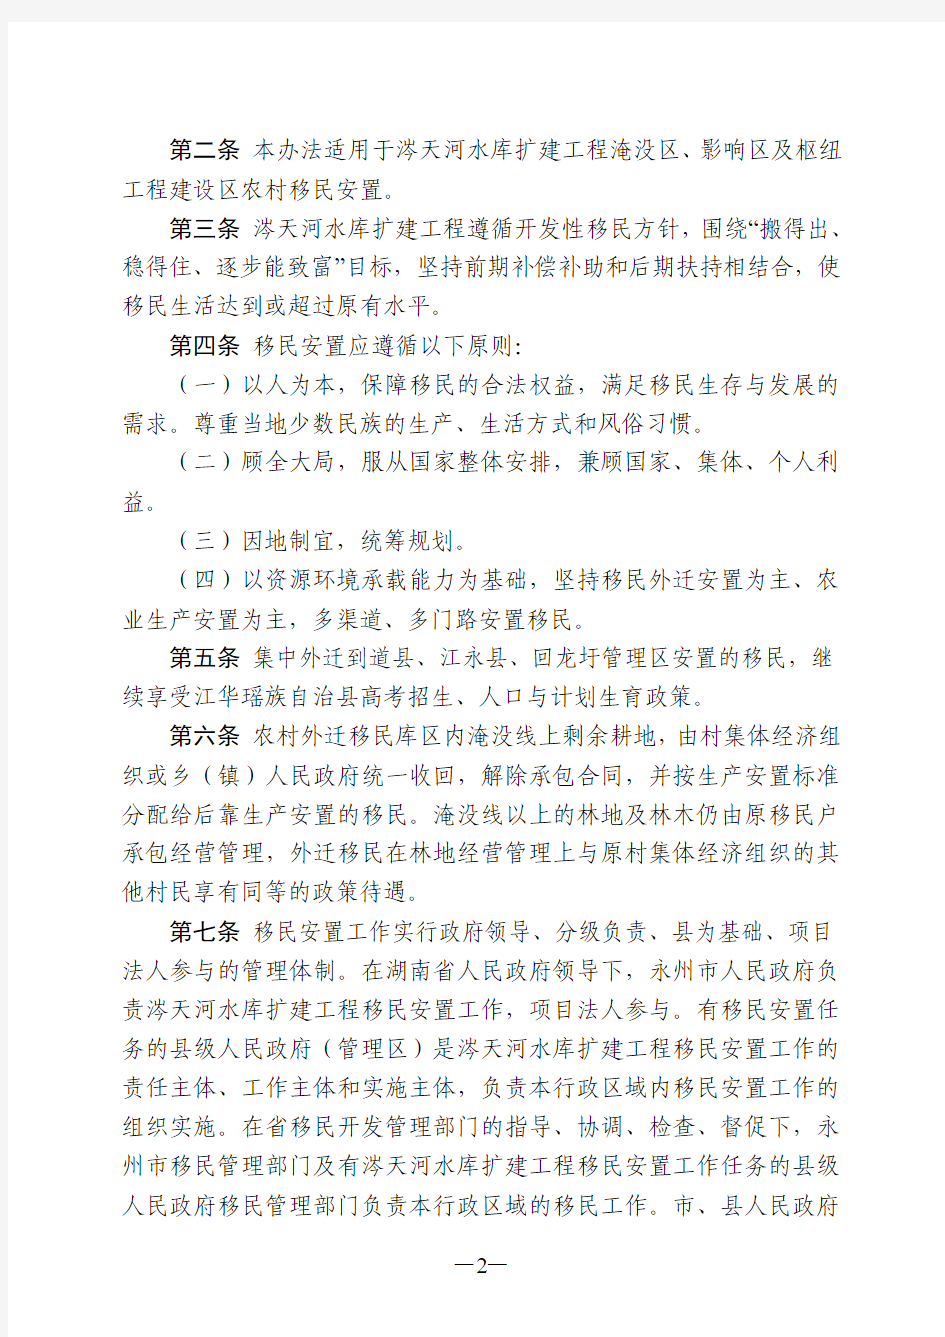 湖南省涔天河水库扩建工程农村移民安置办法